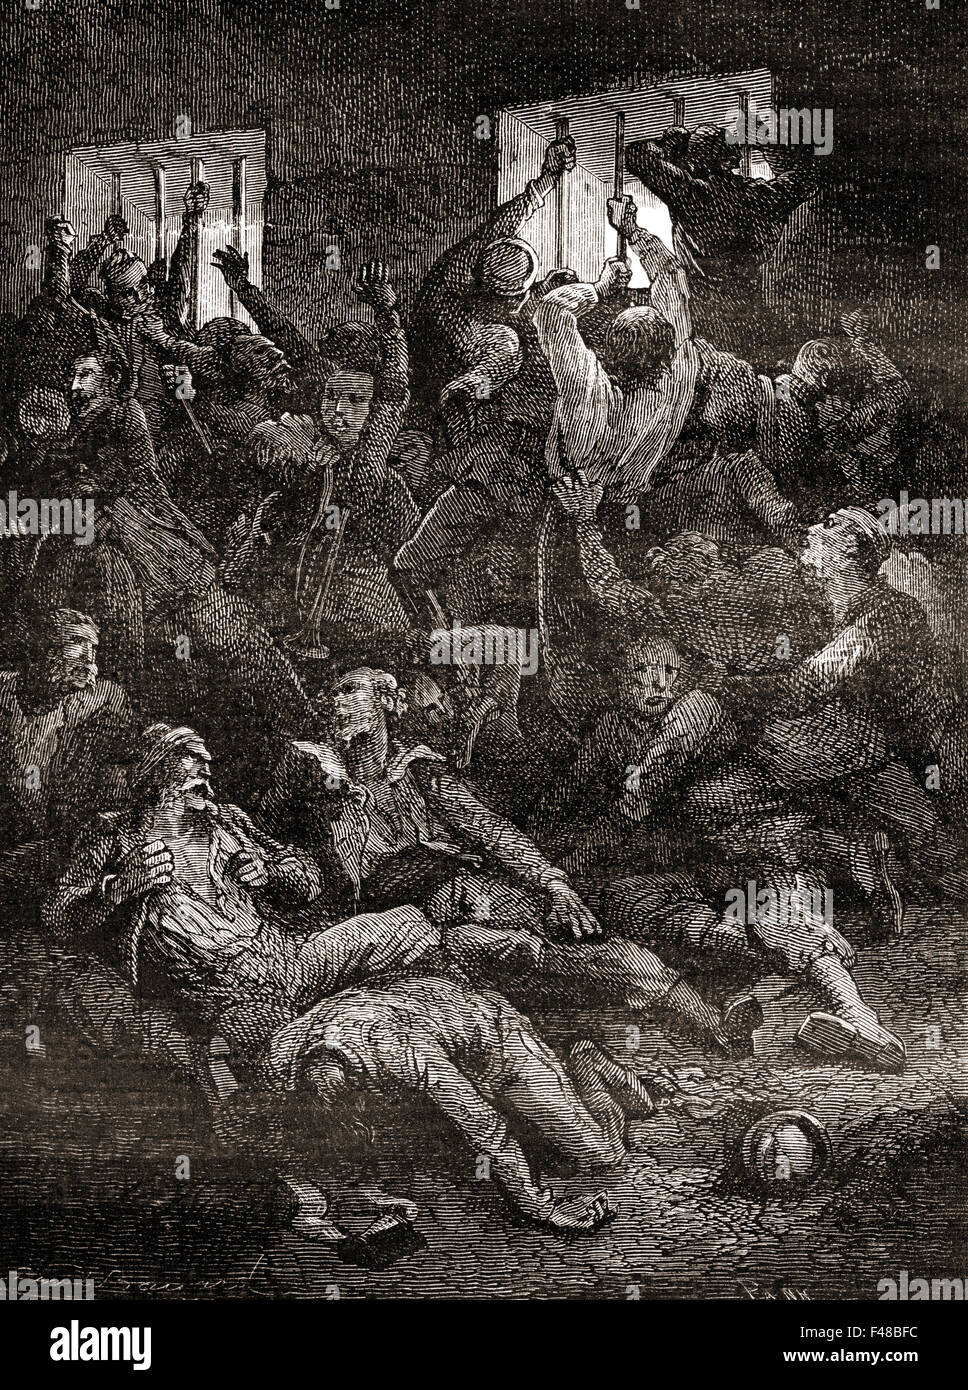 Das Leiden und der Tod aufgrund unzureichender Belüftung, der englischen Gefangenen in das Schwarze Loch von Kalkutta, eine kleine Dungeon im alten Fort William in Kalkutta, Indien, wo die Truppen des Nawab von Bengalen, siraj ud-Daulah, hielten britische Kriegsgefangene nach der Einnahme des Fort am 20. Juni 1756. Stockfoto